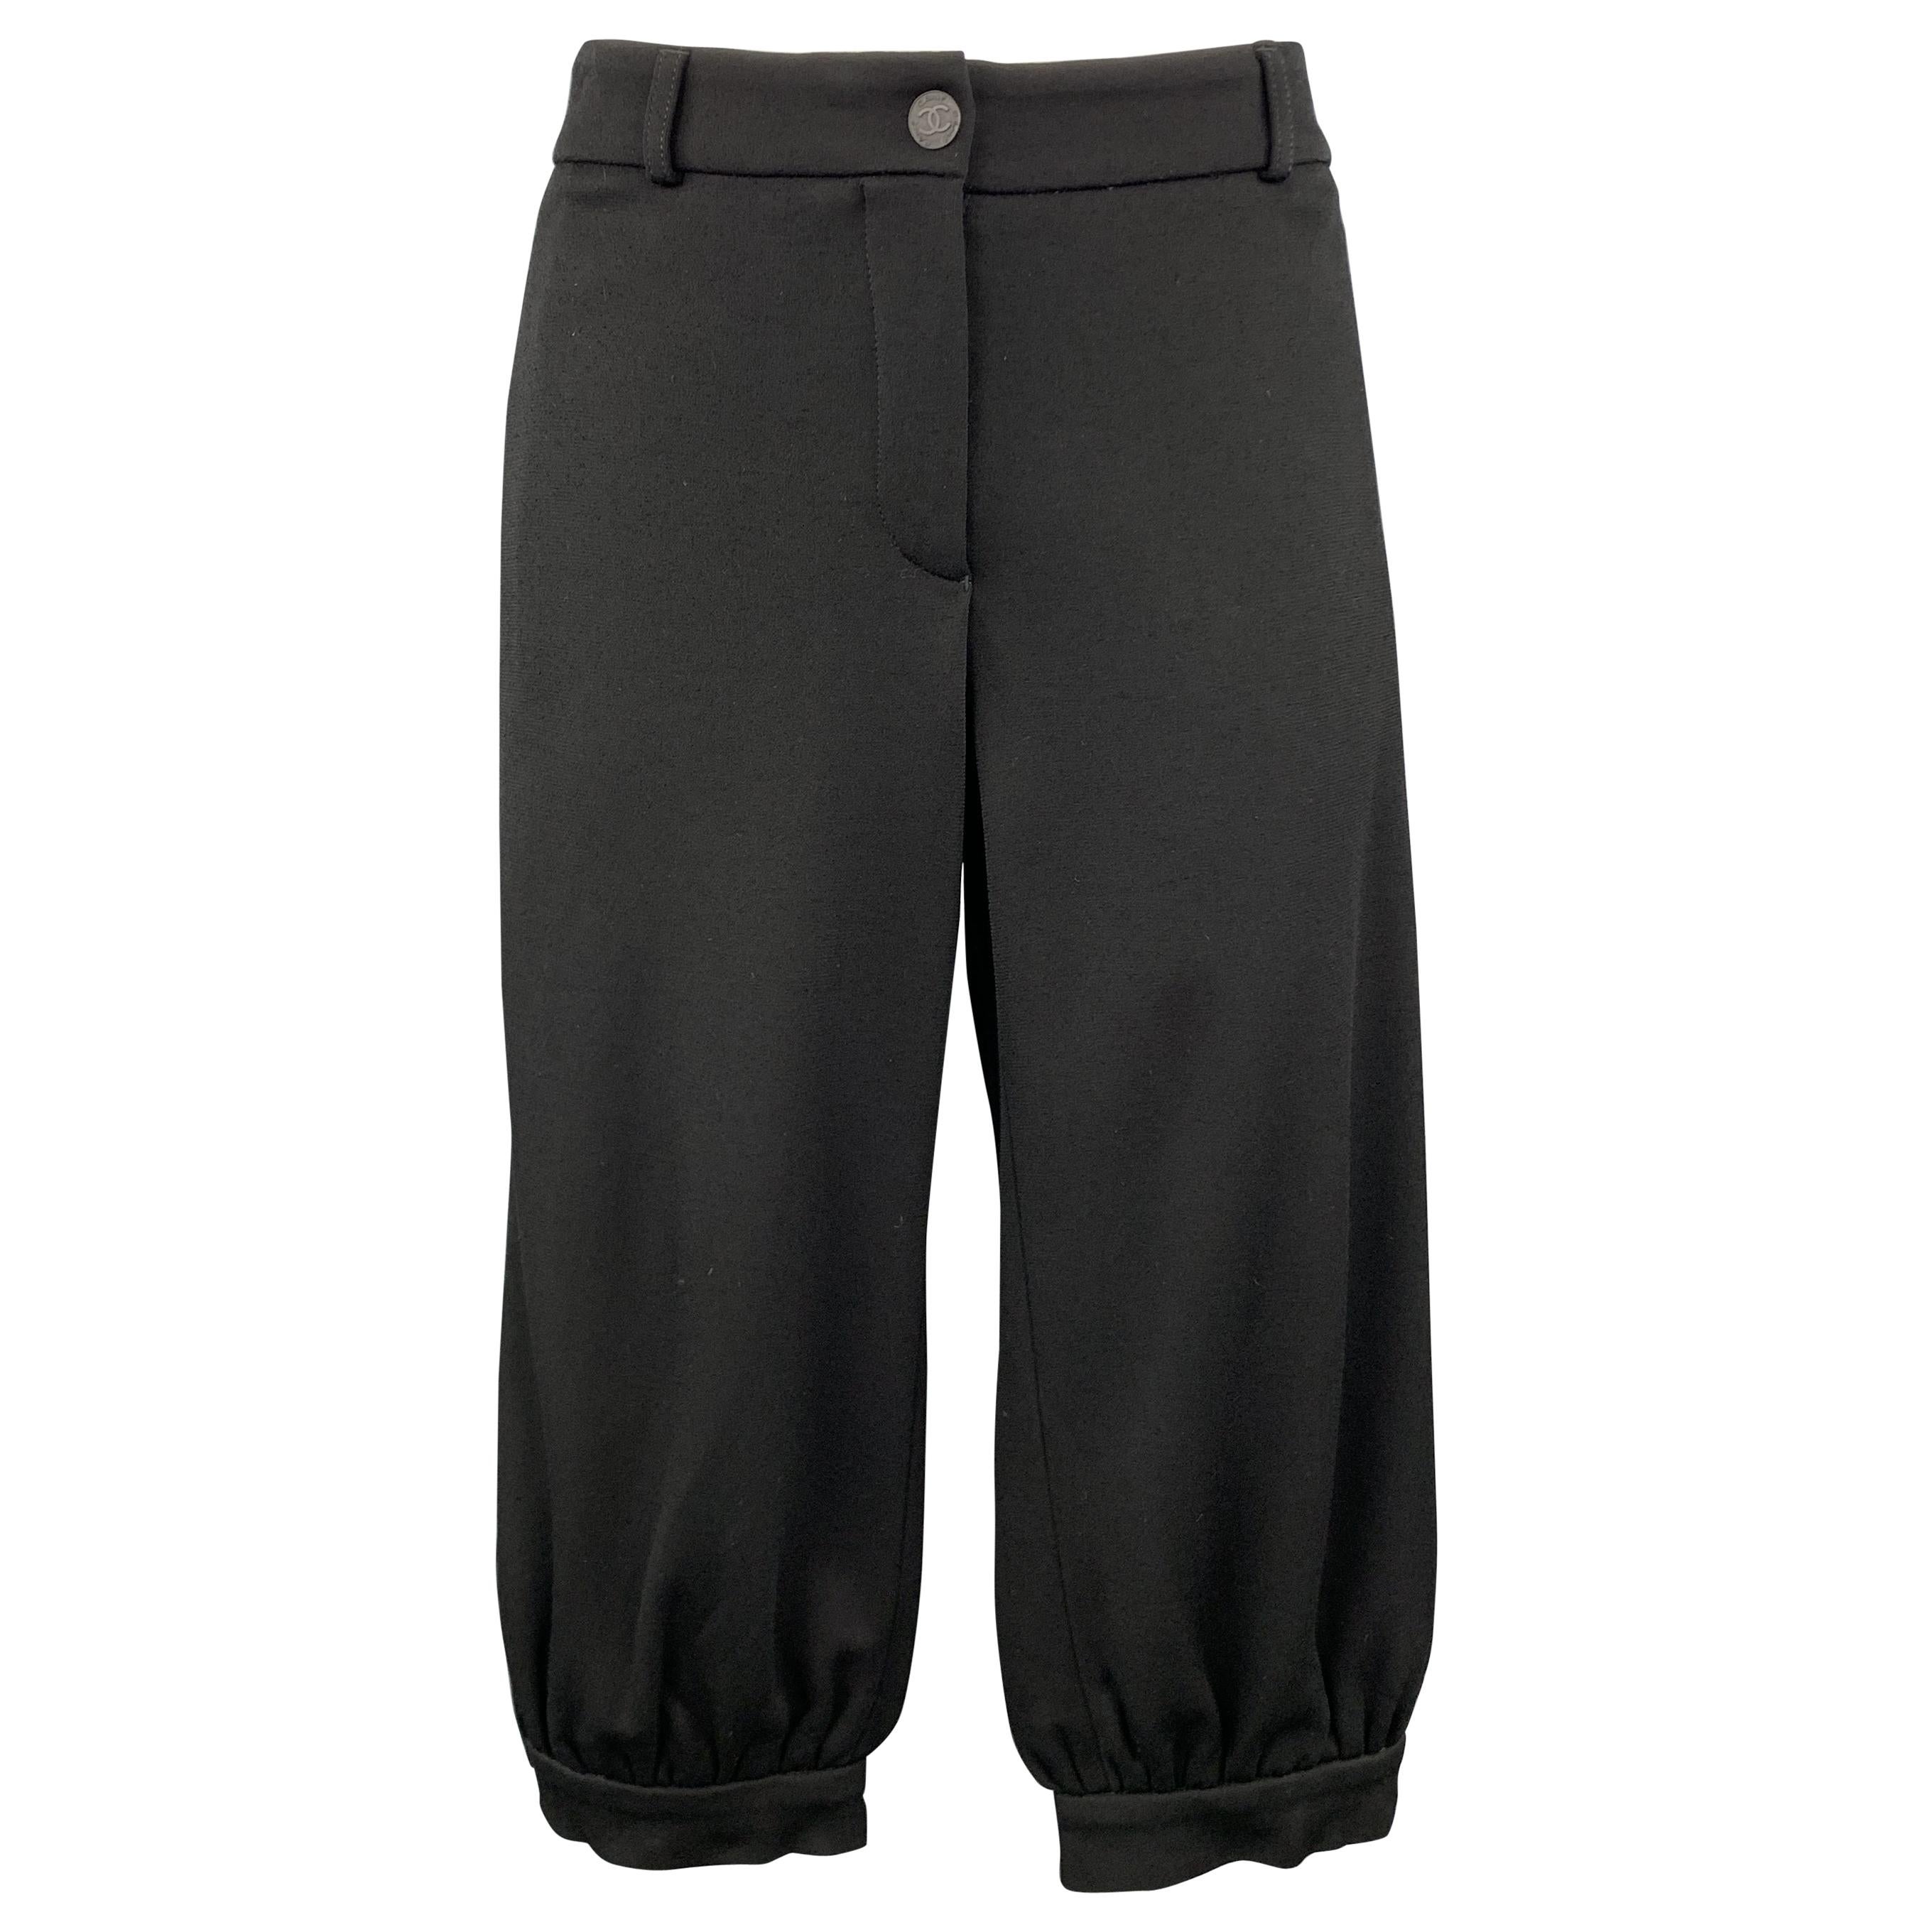 CHANEL Size 10 Black Modal Blend Wide Leg Ruched Capri Pants